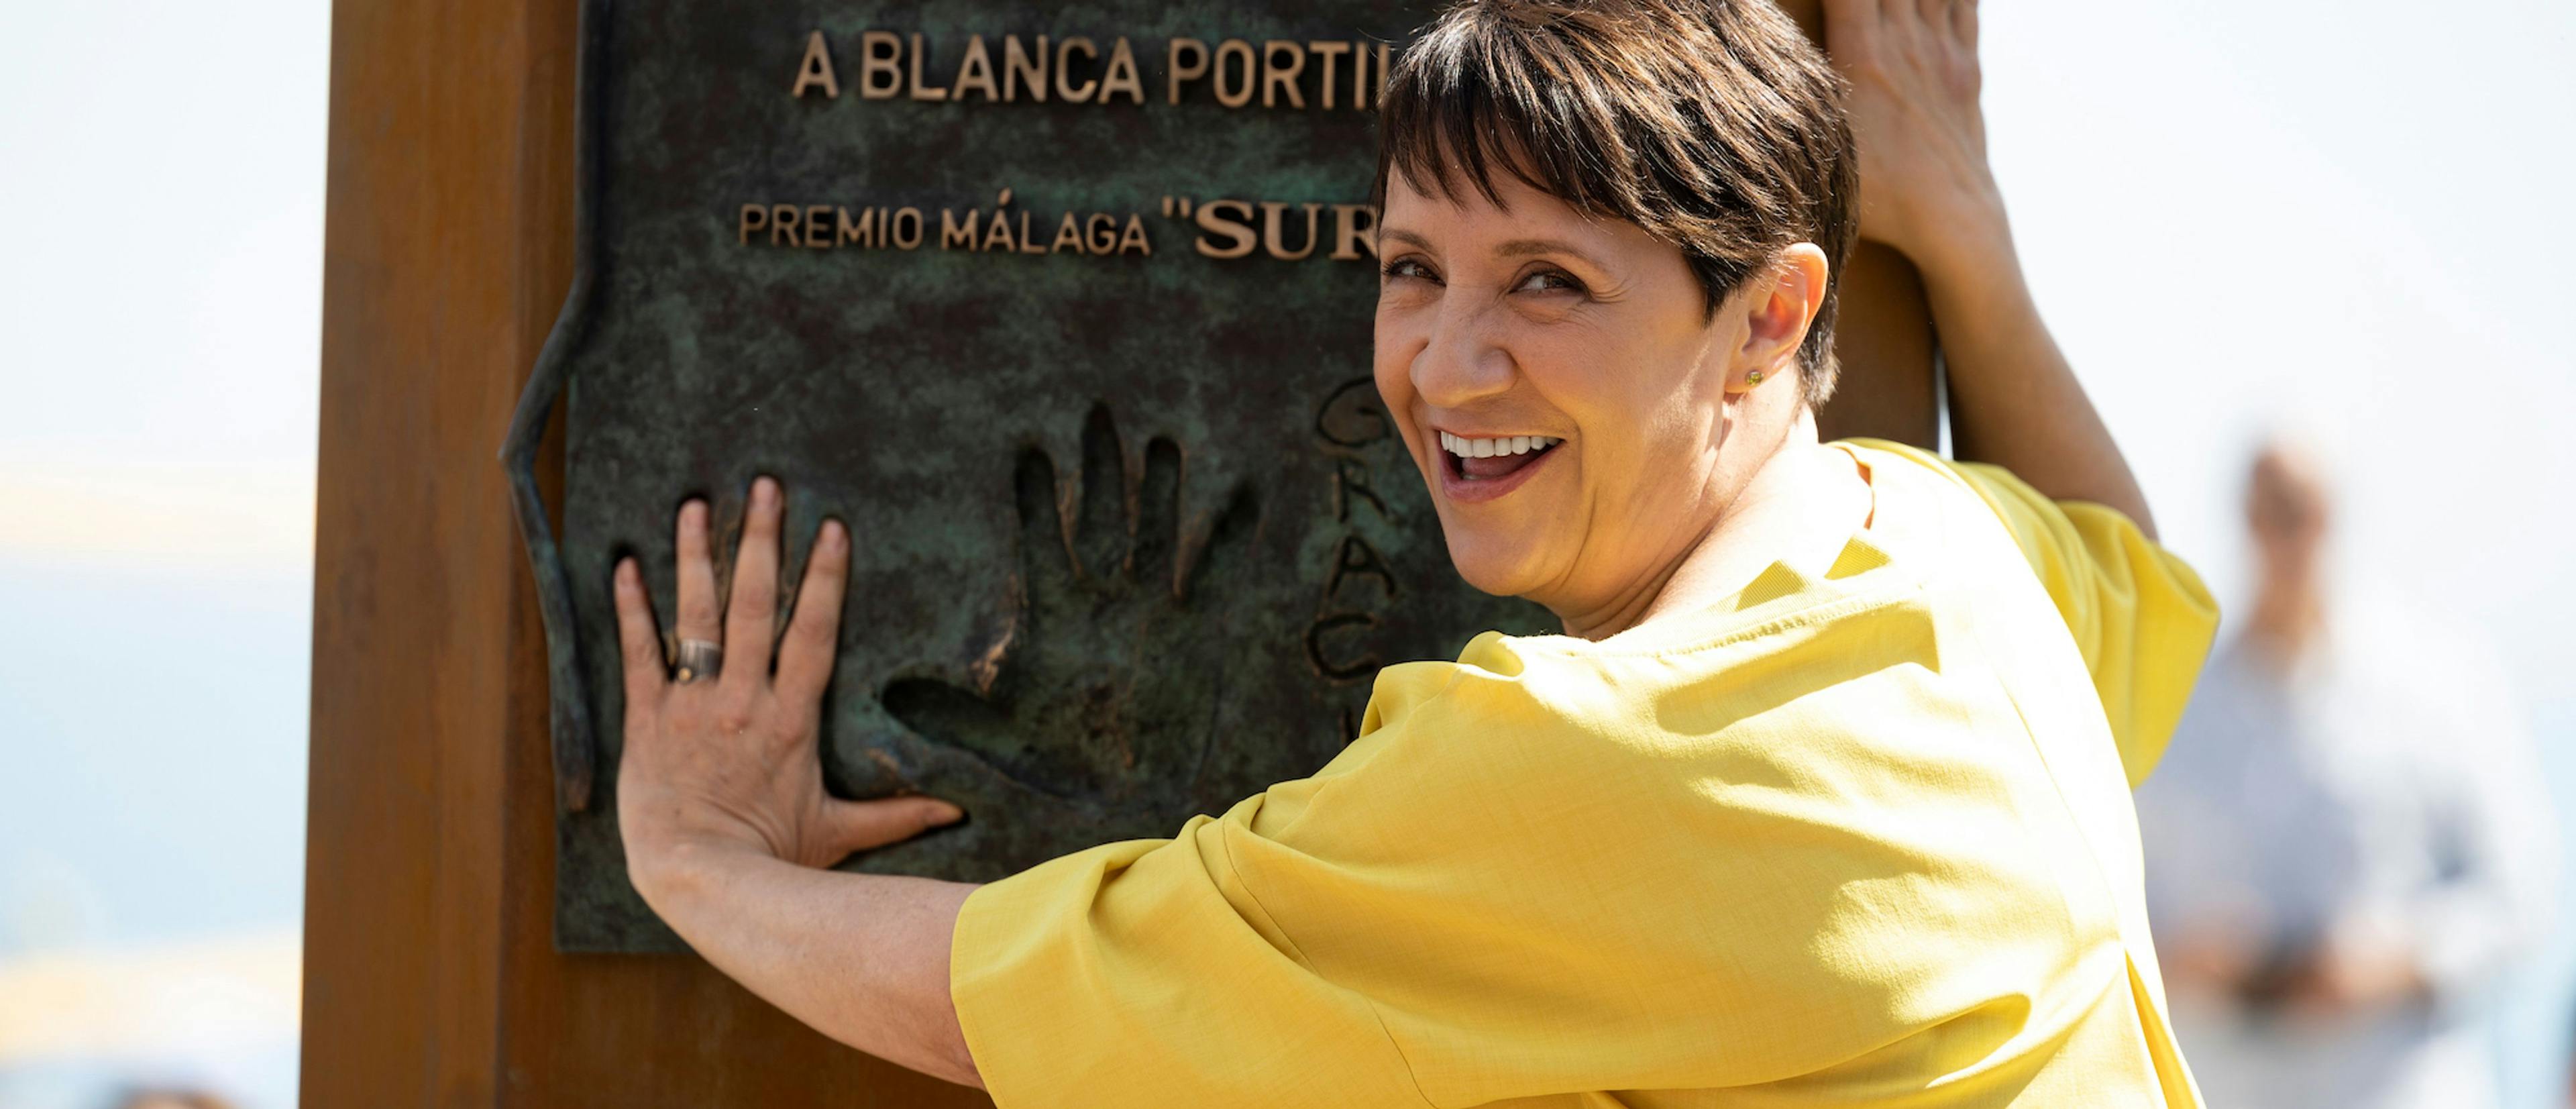 La actriz Blanca Portillo descubre el monolito dedicado a su Premio Málaga - SUR del Festival de Málaga